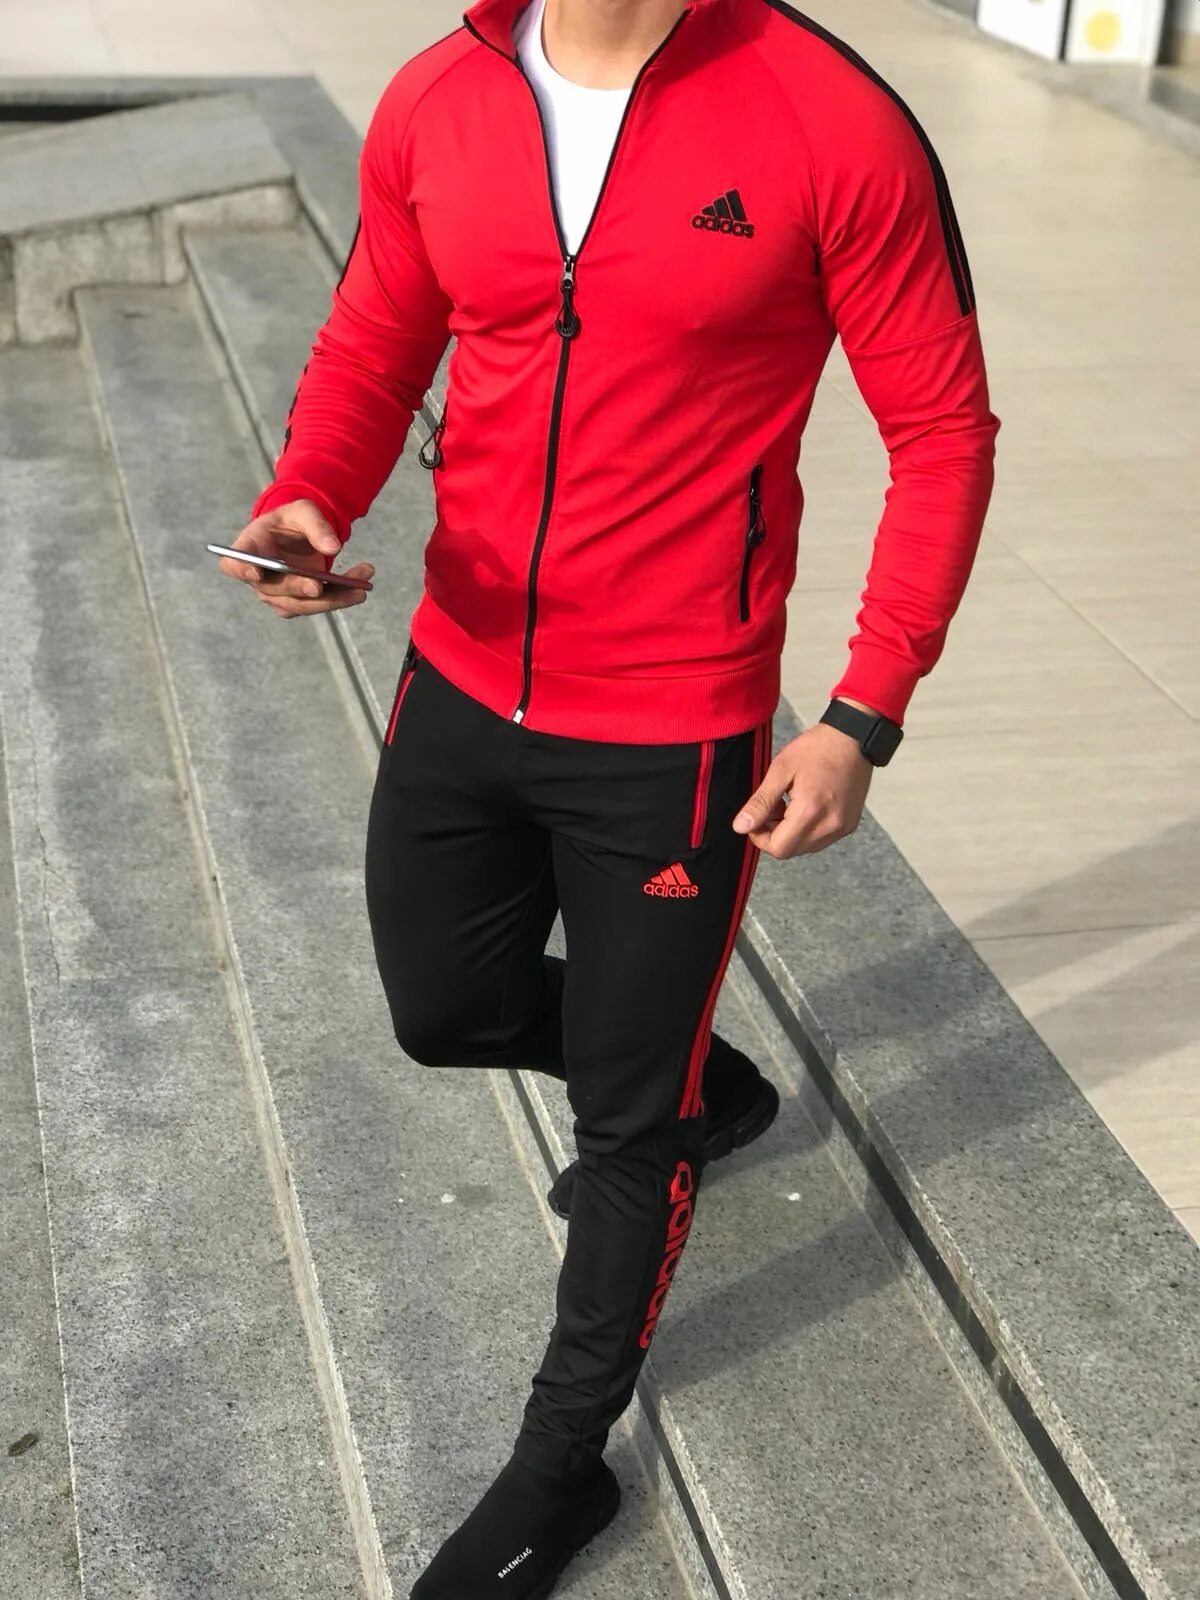 Спортивный костюм адидас мужской красный. Adidas костюм мужской 2021. Красный костюм адидас мужской. Мужской спортивный костюм adidas 2021.